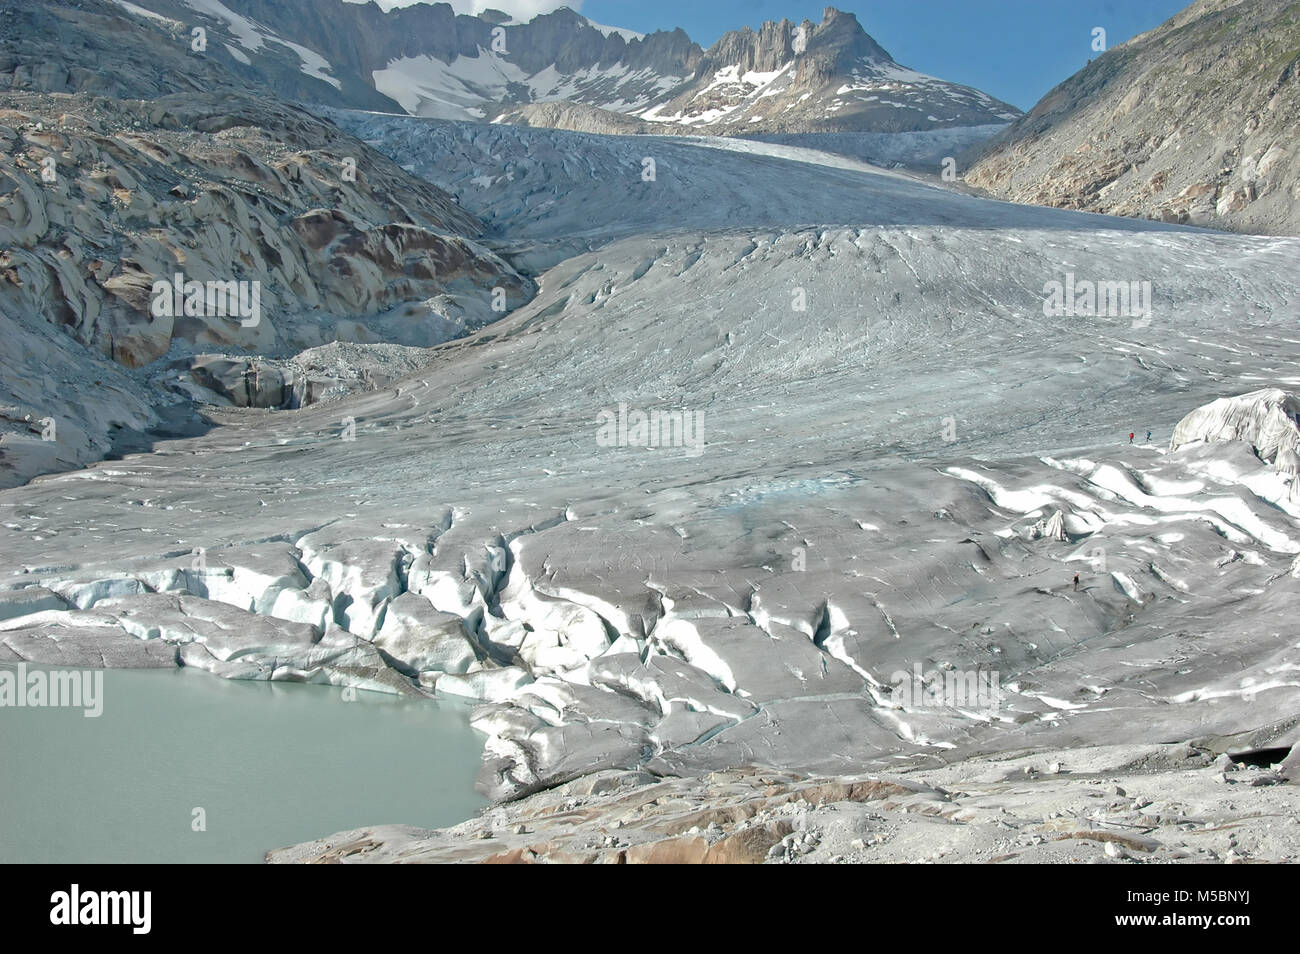 Der Rhonegletscher und die Quelle der Rhone, mit Alpinisten auf dem Eis. Stockfoto